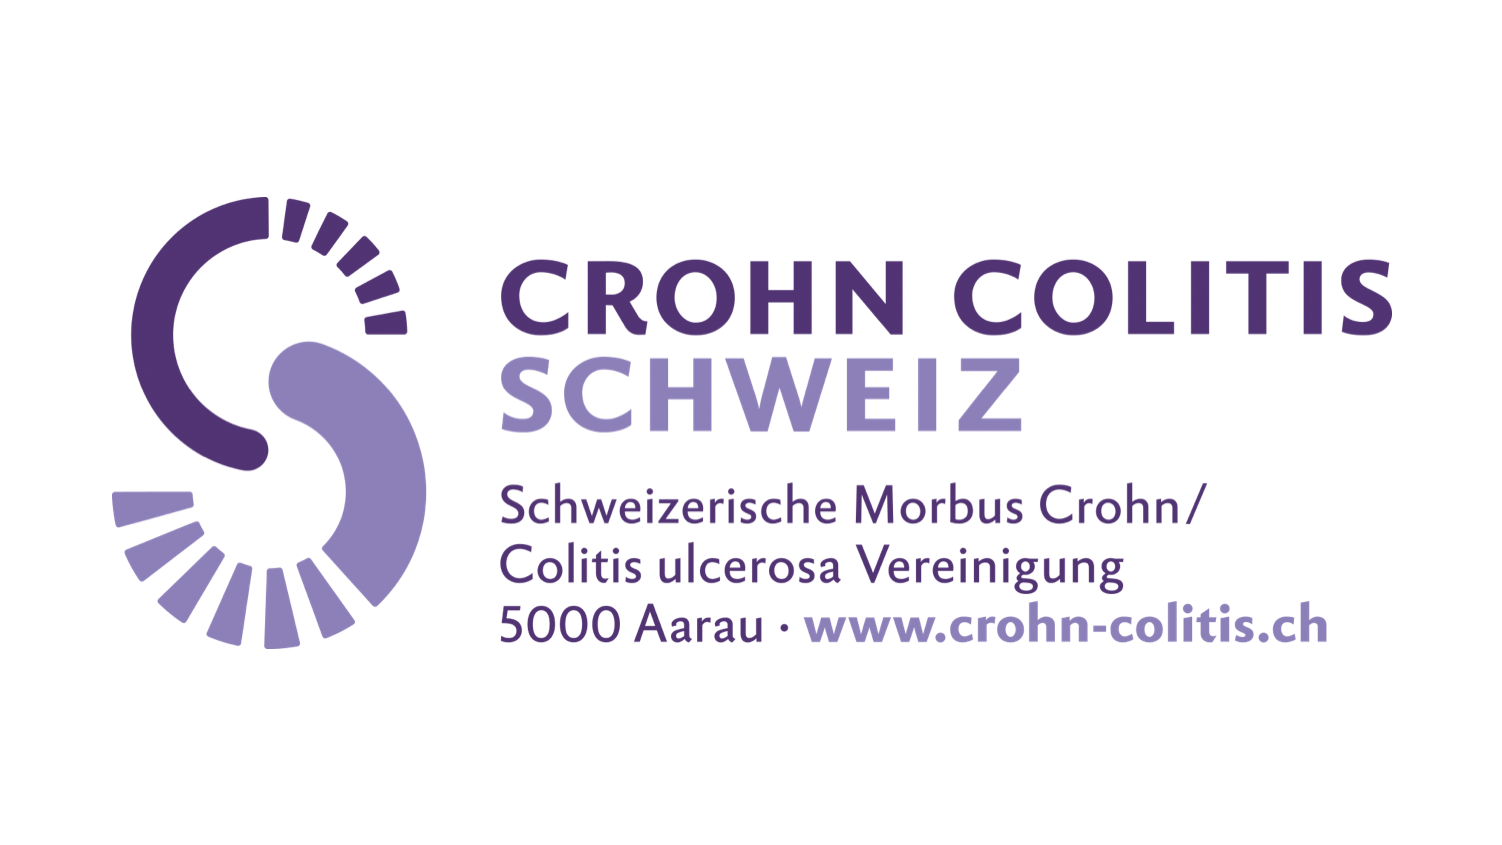 Crohn Colitis Schweiz: Ein Verein der sich für Menschen mit einer chronisch entzündlichen Darmkrankheit einsetzt. 